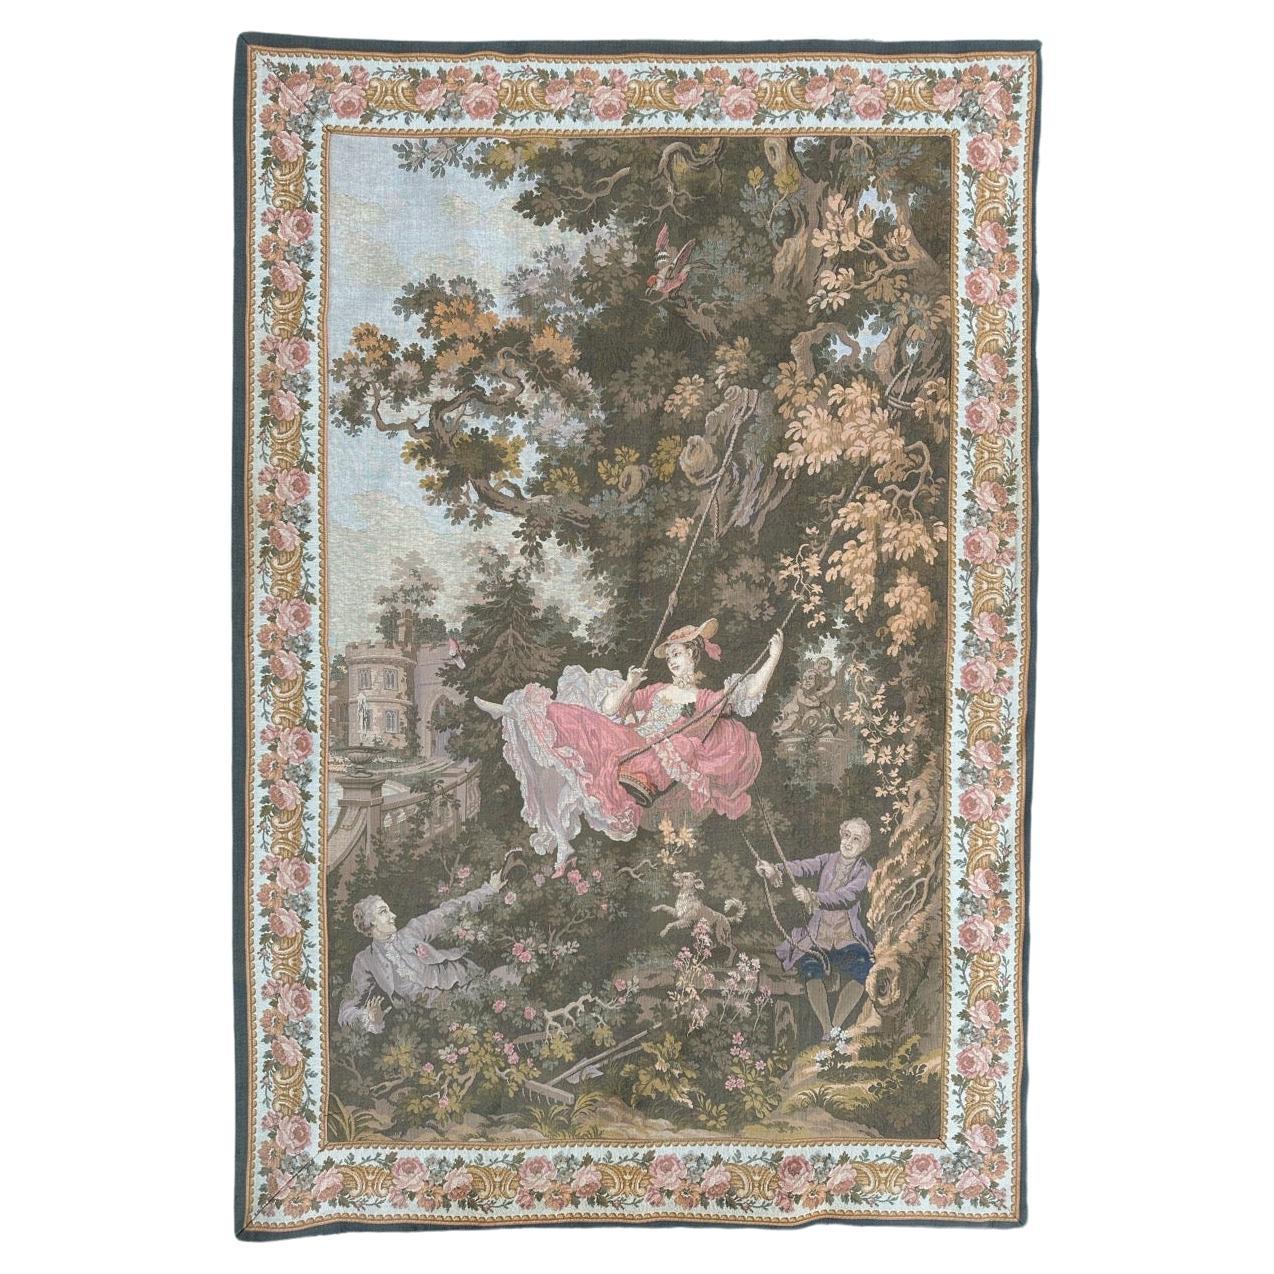 Hübscher französischer Jacquard-Wandteppich im Aubusson-Stil aus der Mitte des Jahrhunderts, "L'escarpolette".